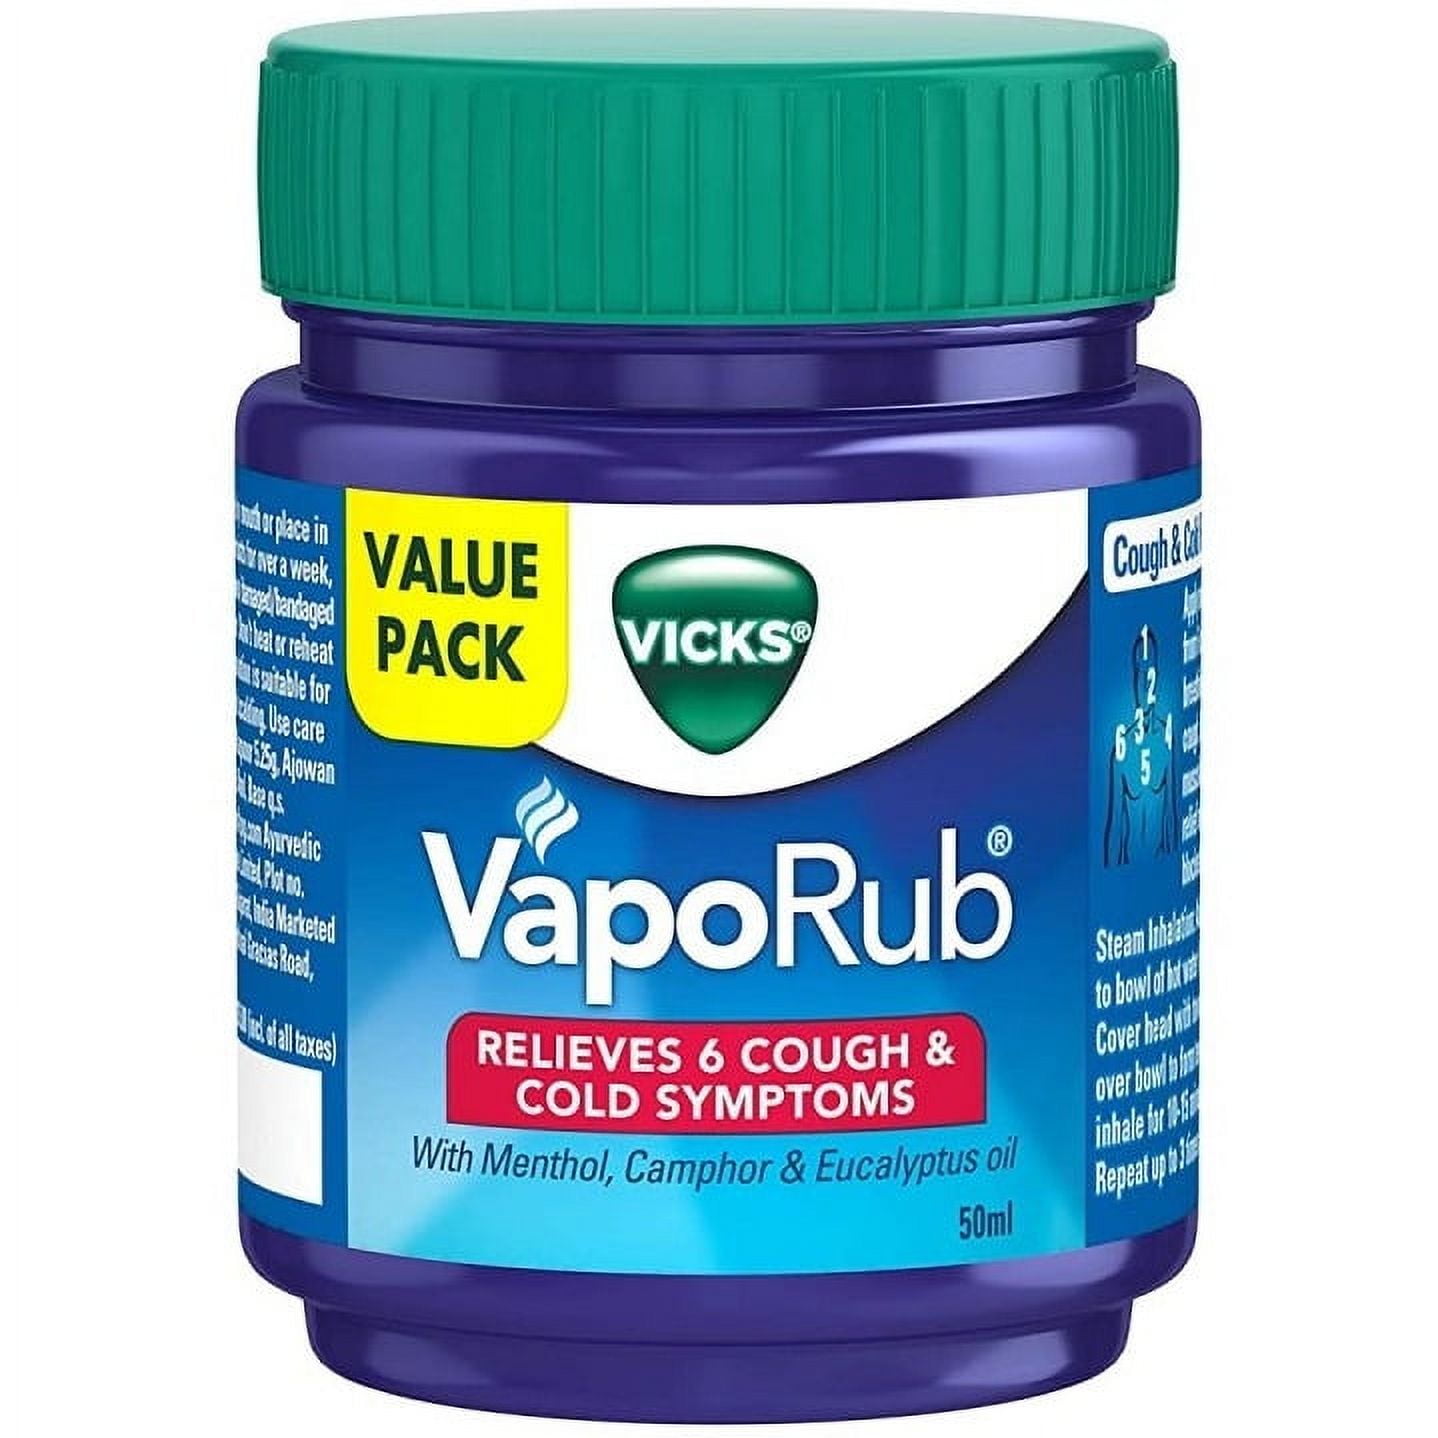 Vicks VapoRub Cough Suppressant Topical Chest Rub & Analgesic Ointment -  1.76 oz